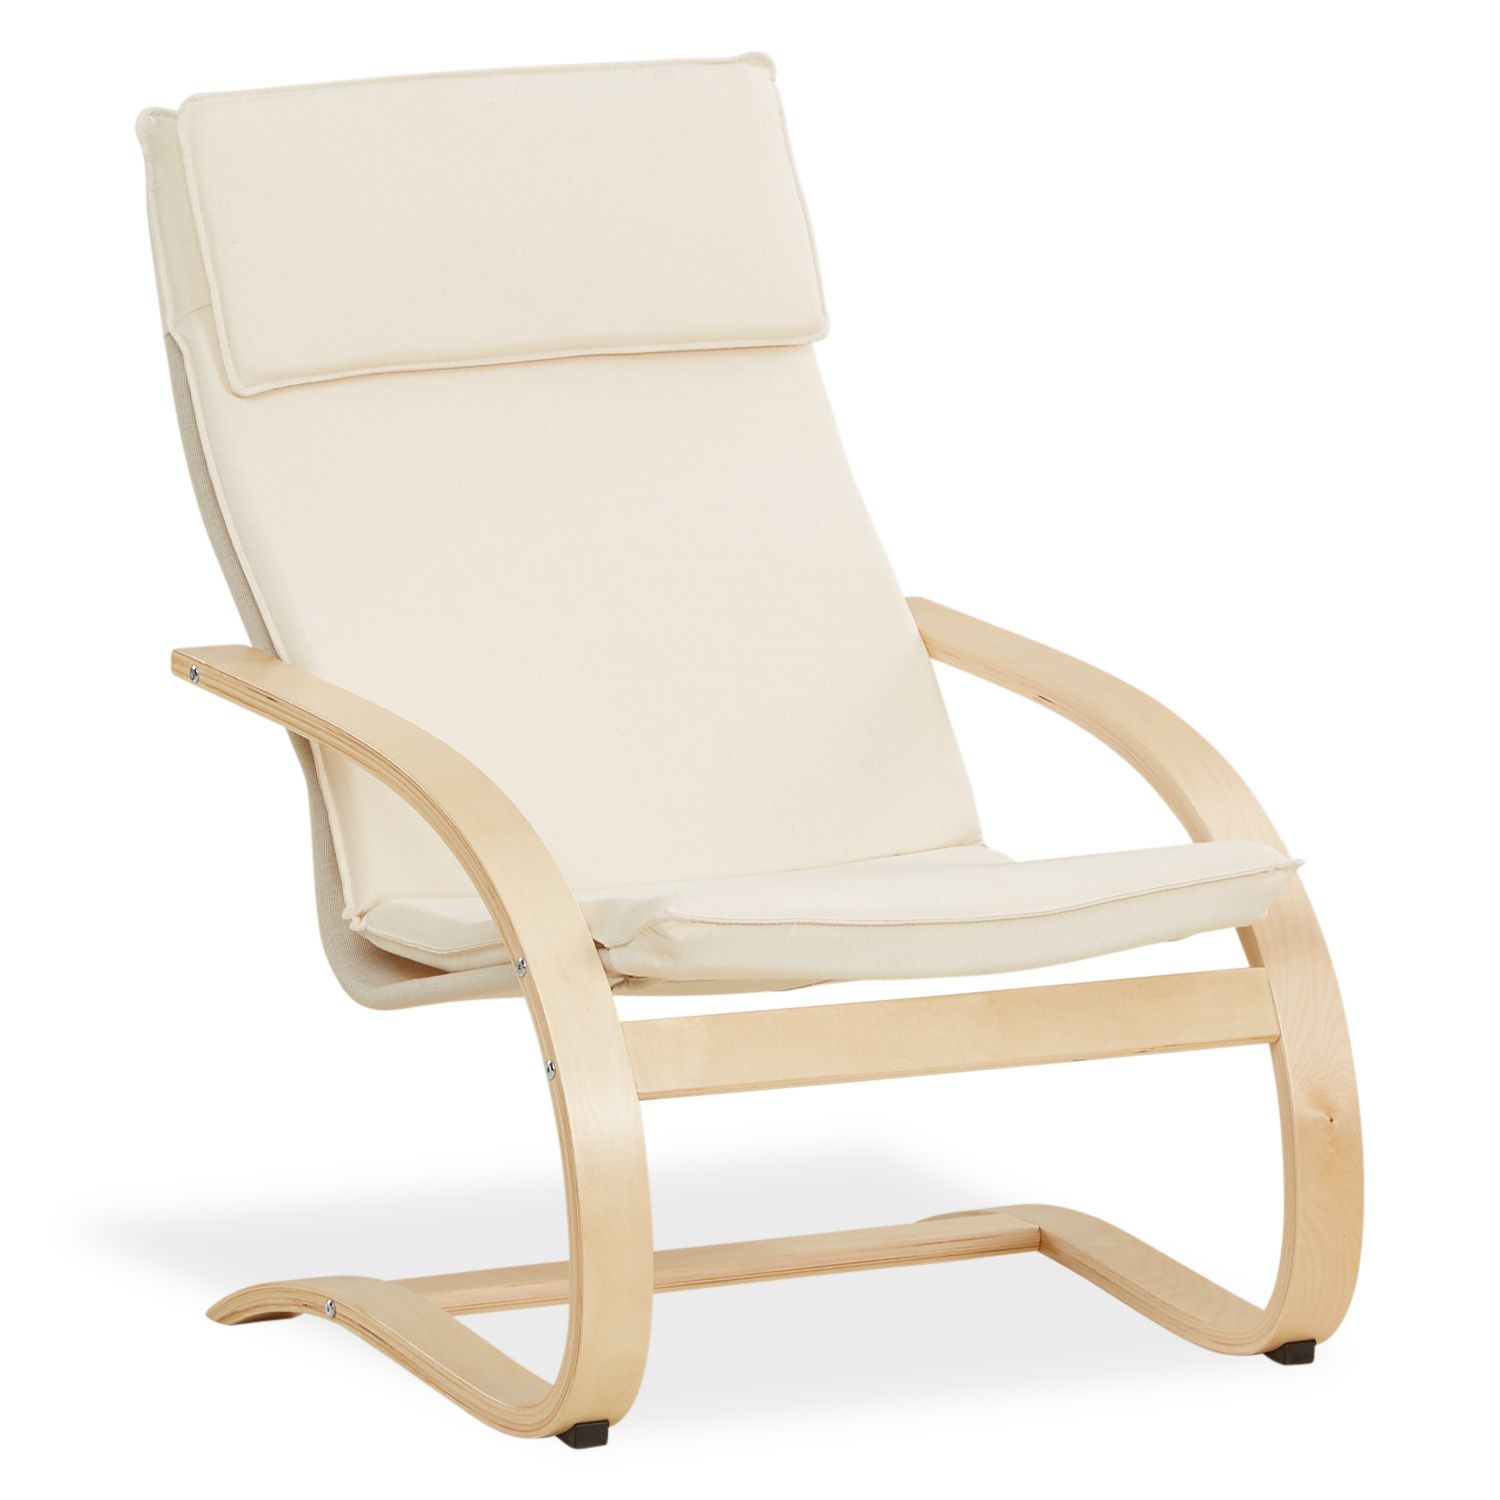 Recliner chair Natural Nursing chair Chaise lounge Eames chair Armchair